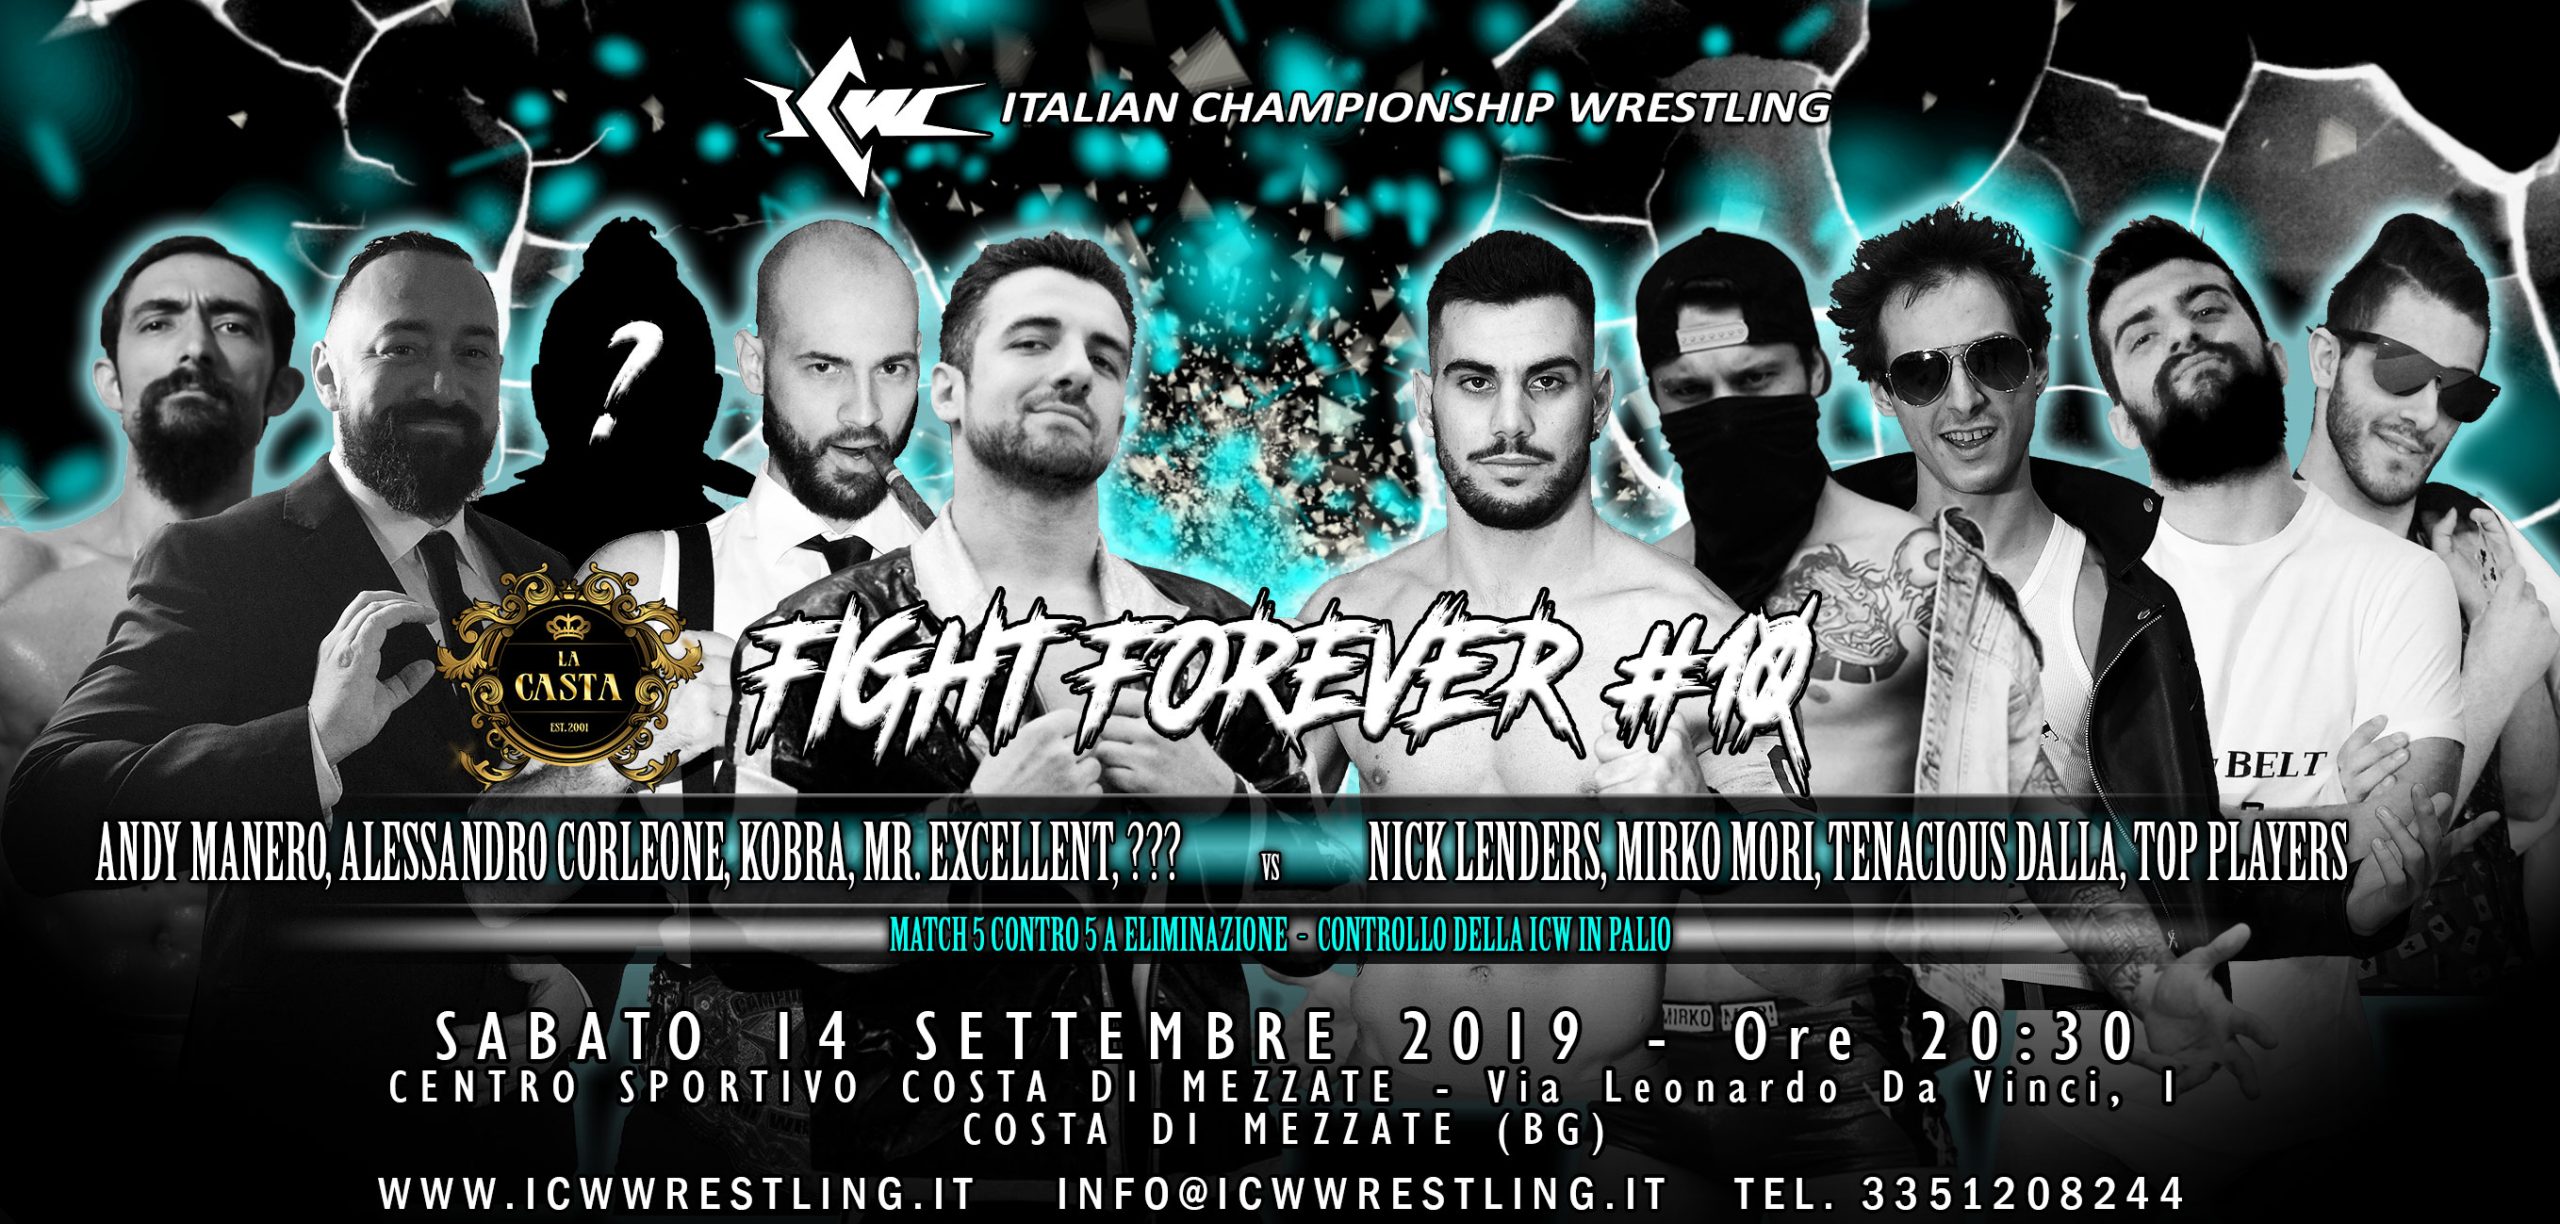 Sabato 14 settembre a Bergamo il decimo capitolo della serie ICW Fight Forever!